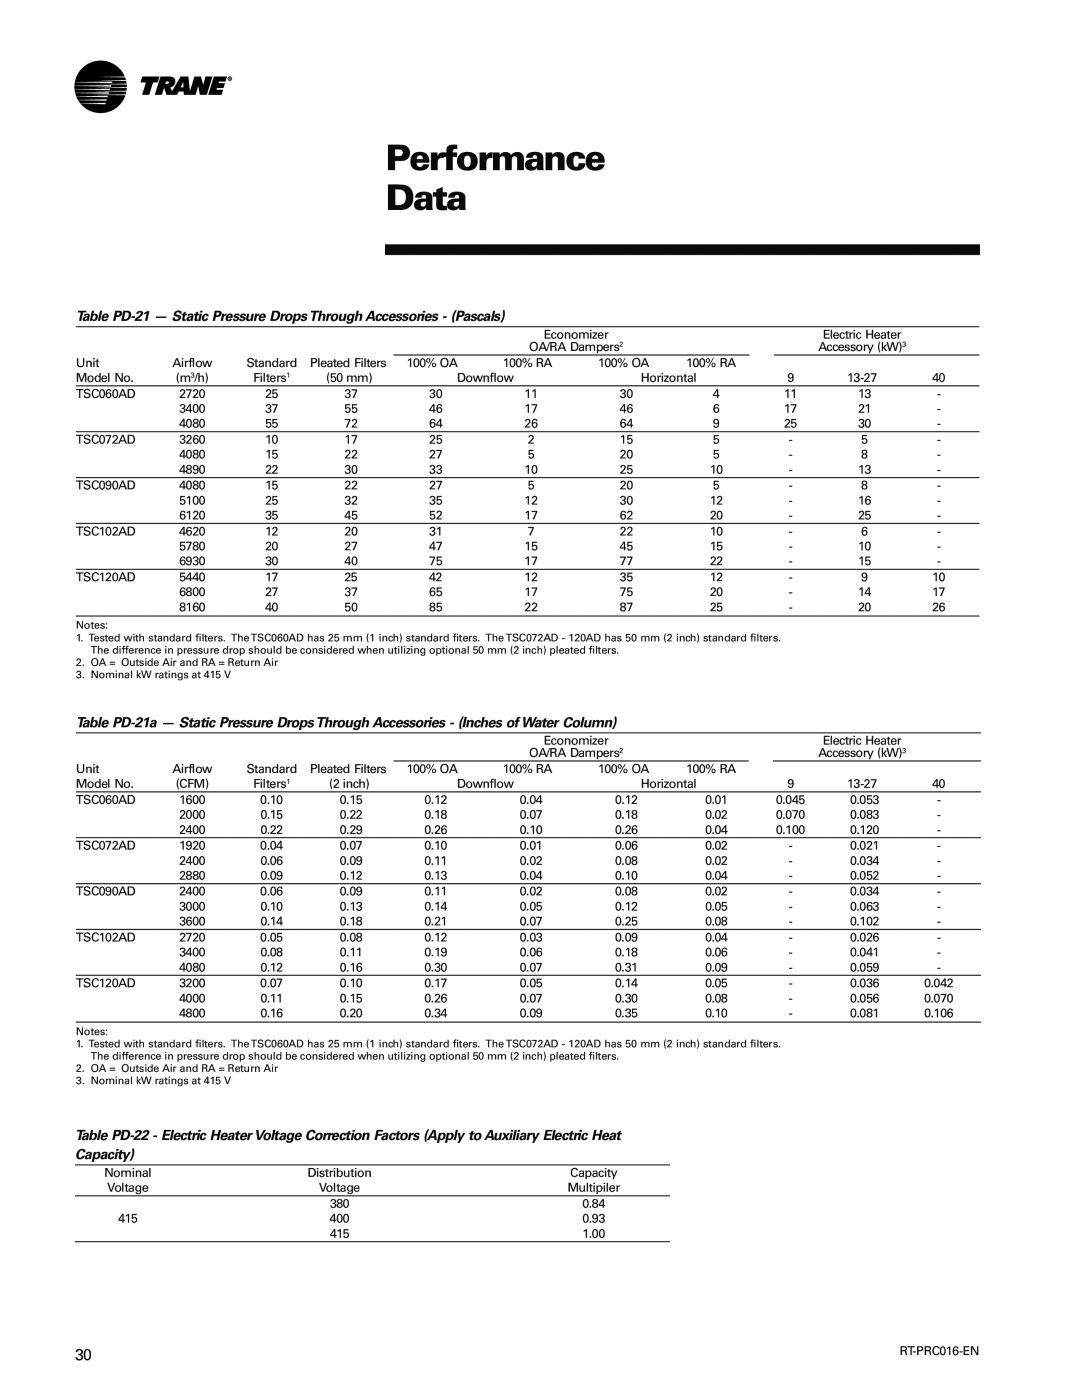 Trane TSC060-120 manual Performance Data, Capacity 